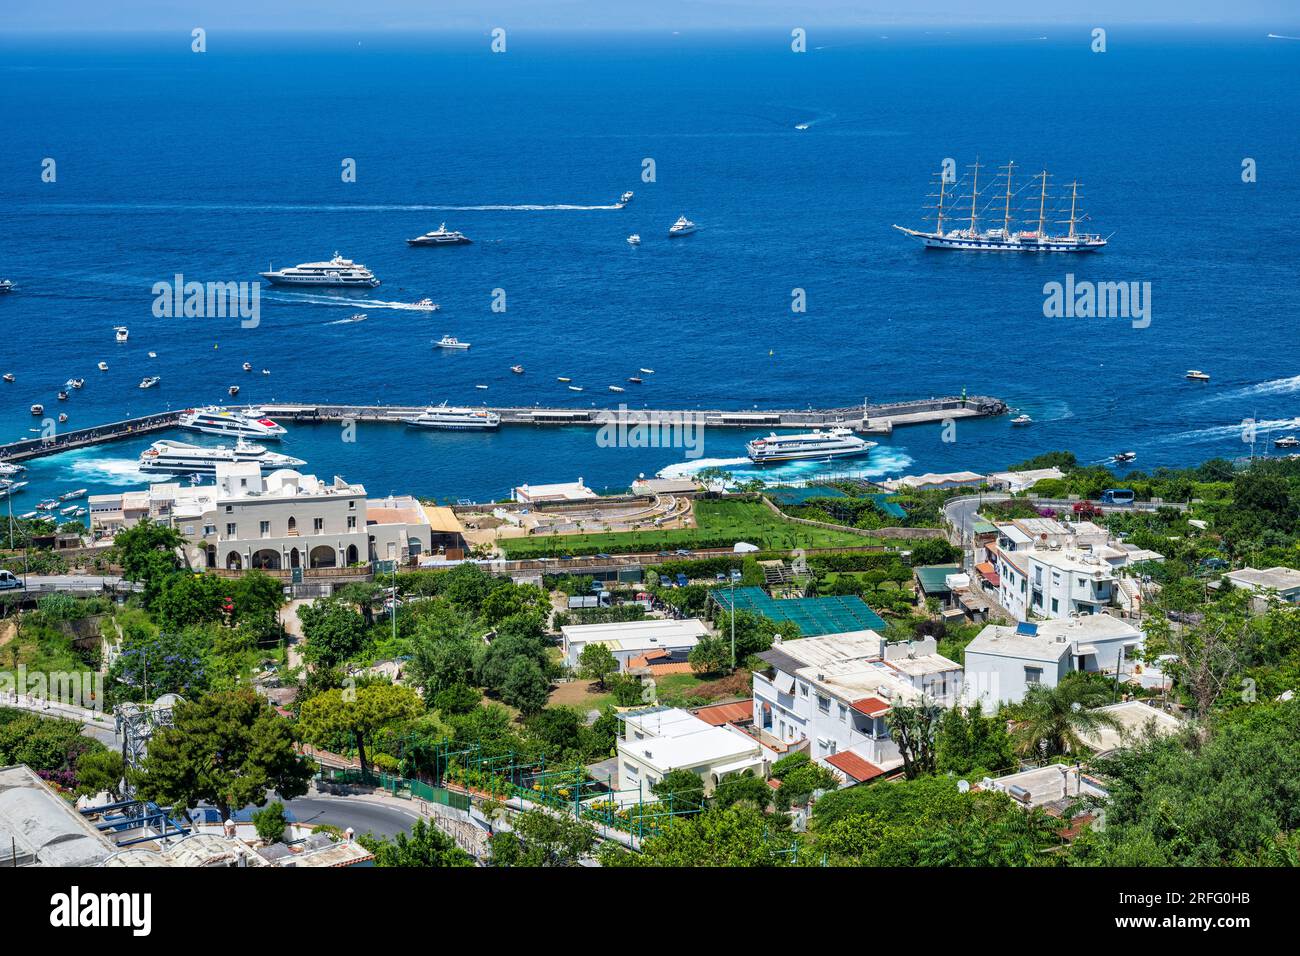 Vista dalla stazione montana della funicolare di Capri, affacciata su Marina grande, sull'isola di Capri, nel Golfo di Napoli, nella regione Campania Foto Stock